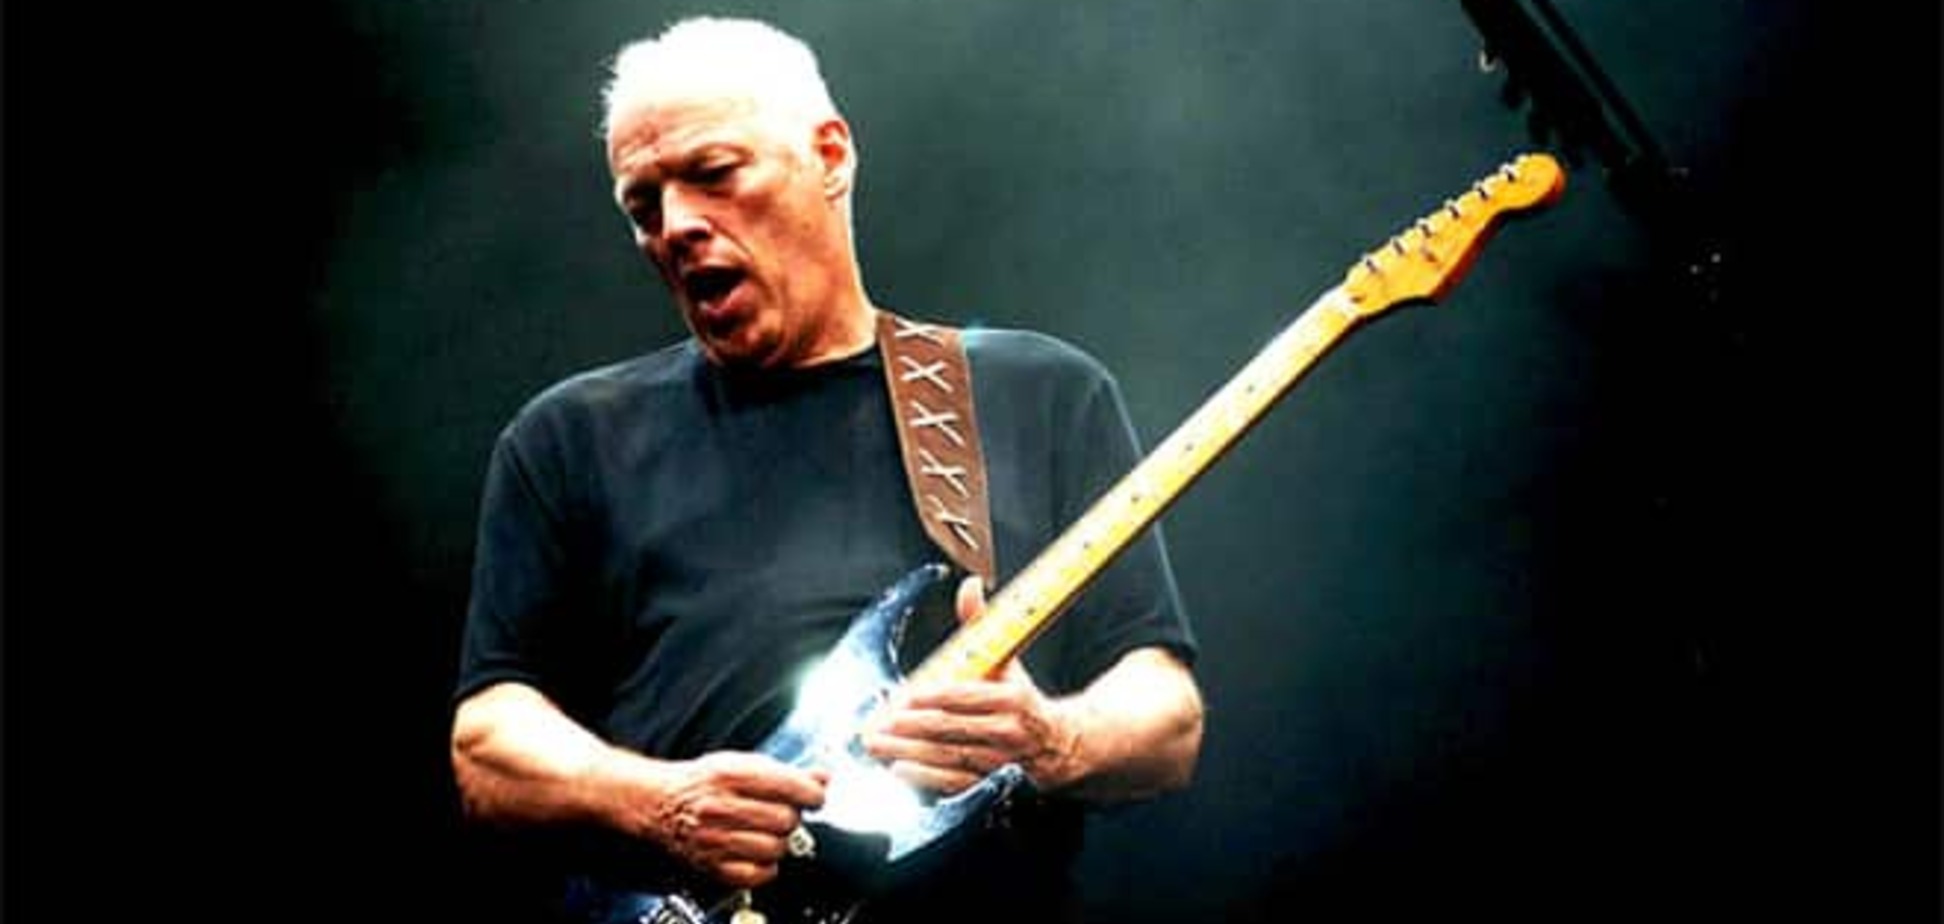 Гастролировать просто немыслимо: Гилмор распустил Pink Floyd